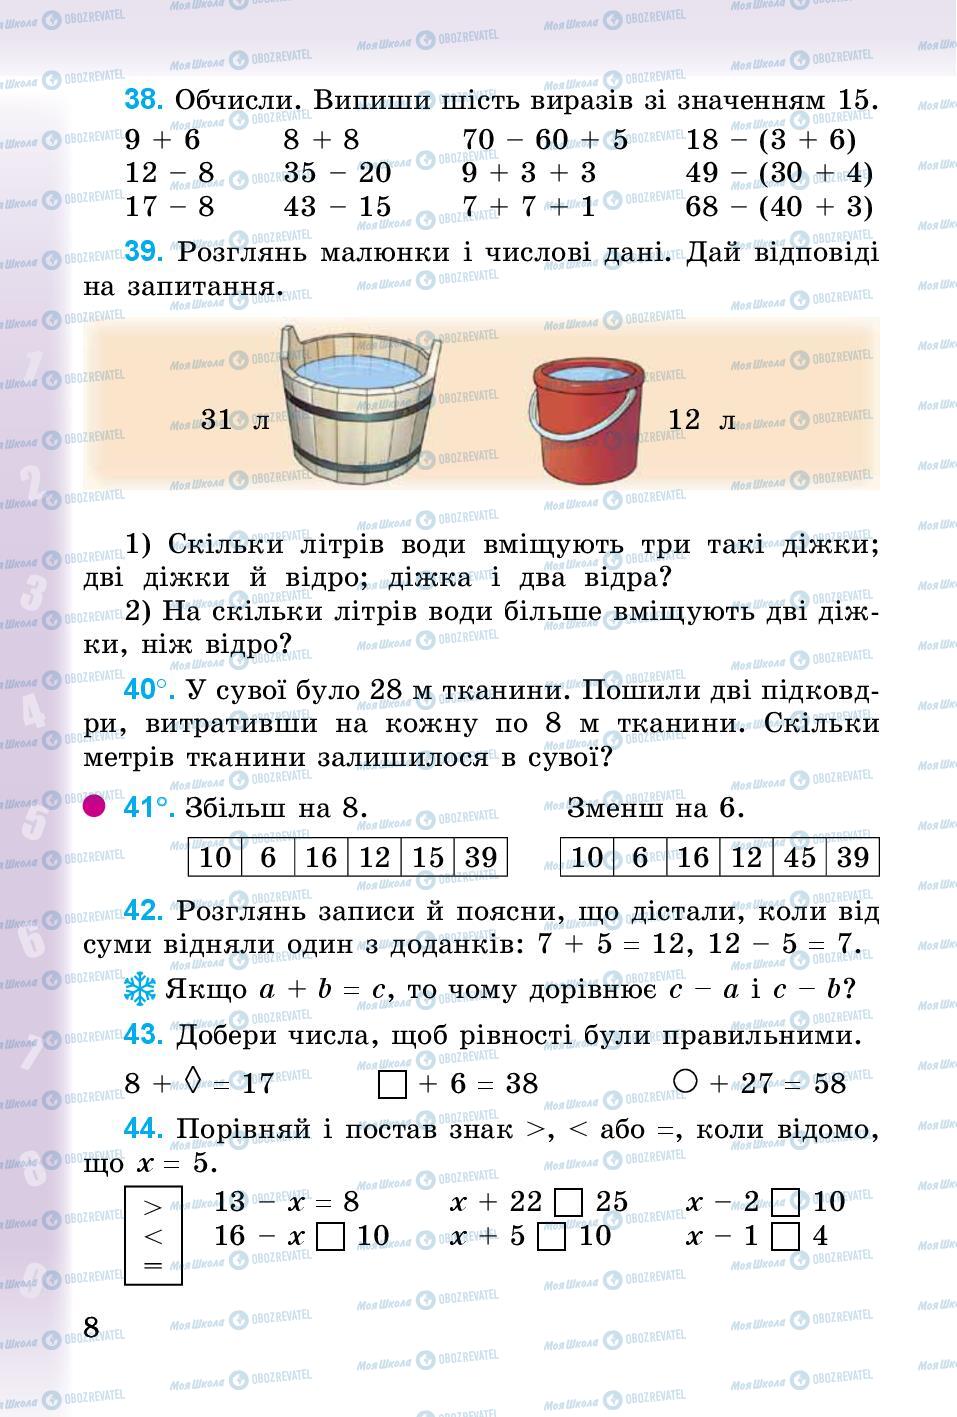 Підручники Математика 3 клас сторінка 8